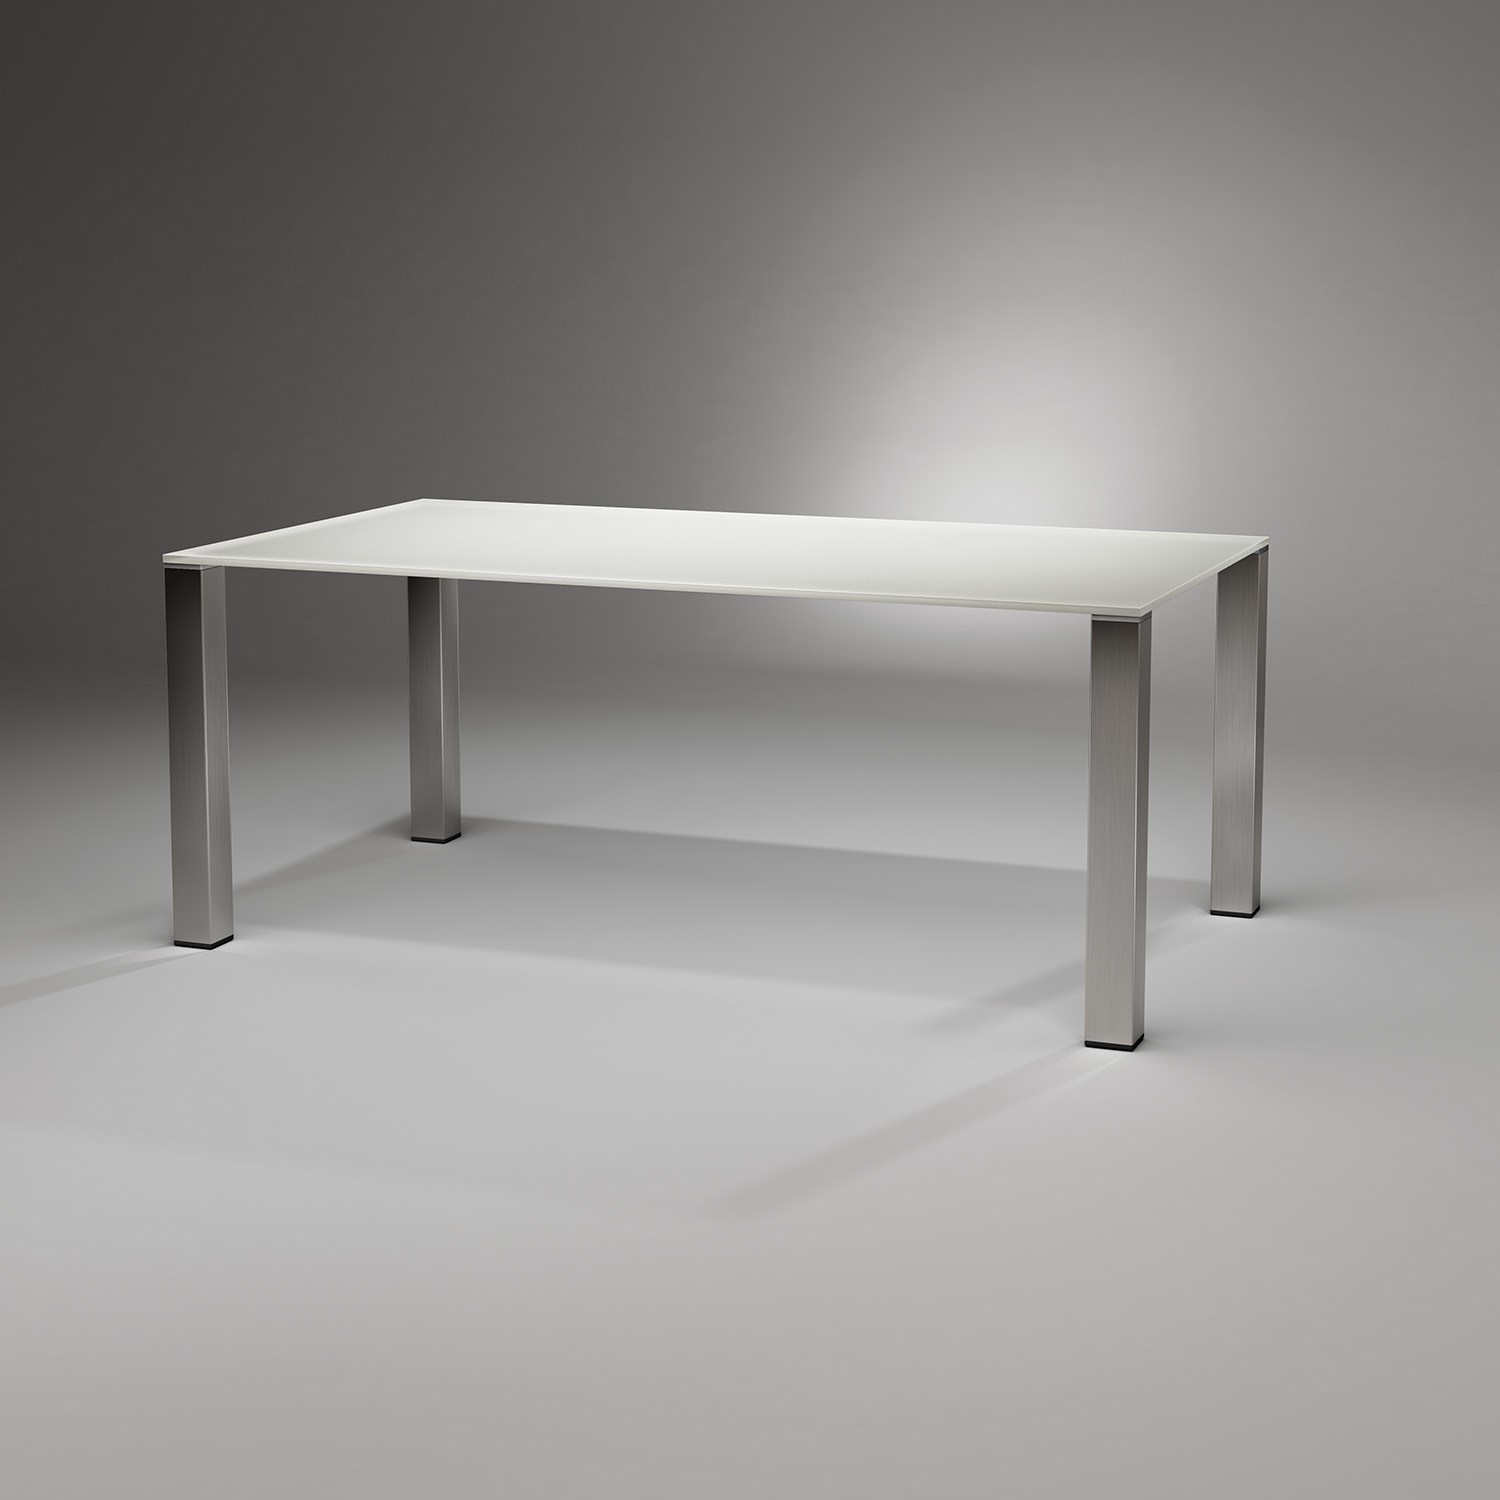 Moderner Glastisch QUADRO MAGNUM von DREIECK DESIGN: QM 2072 - OPTWHITE samtcolor reinweiss - Tischfüße Edelstahl gebürstet